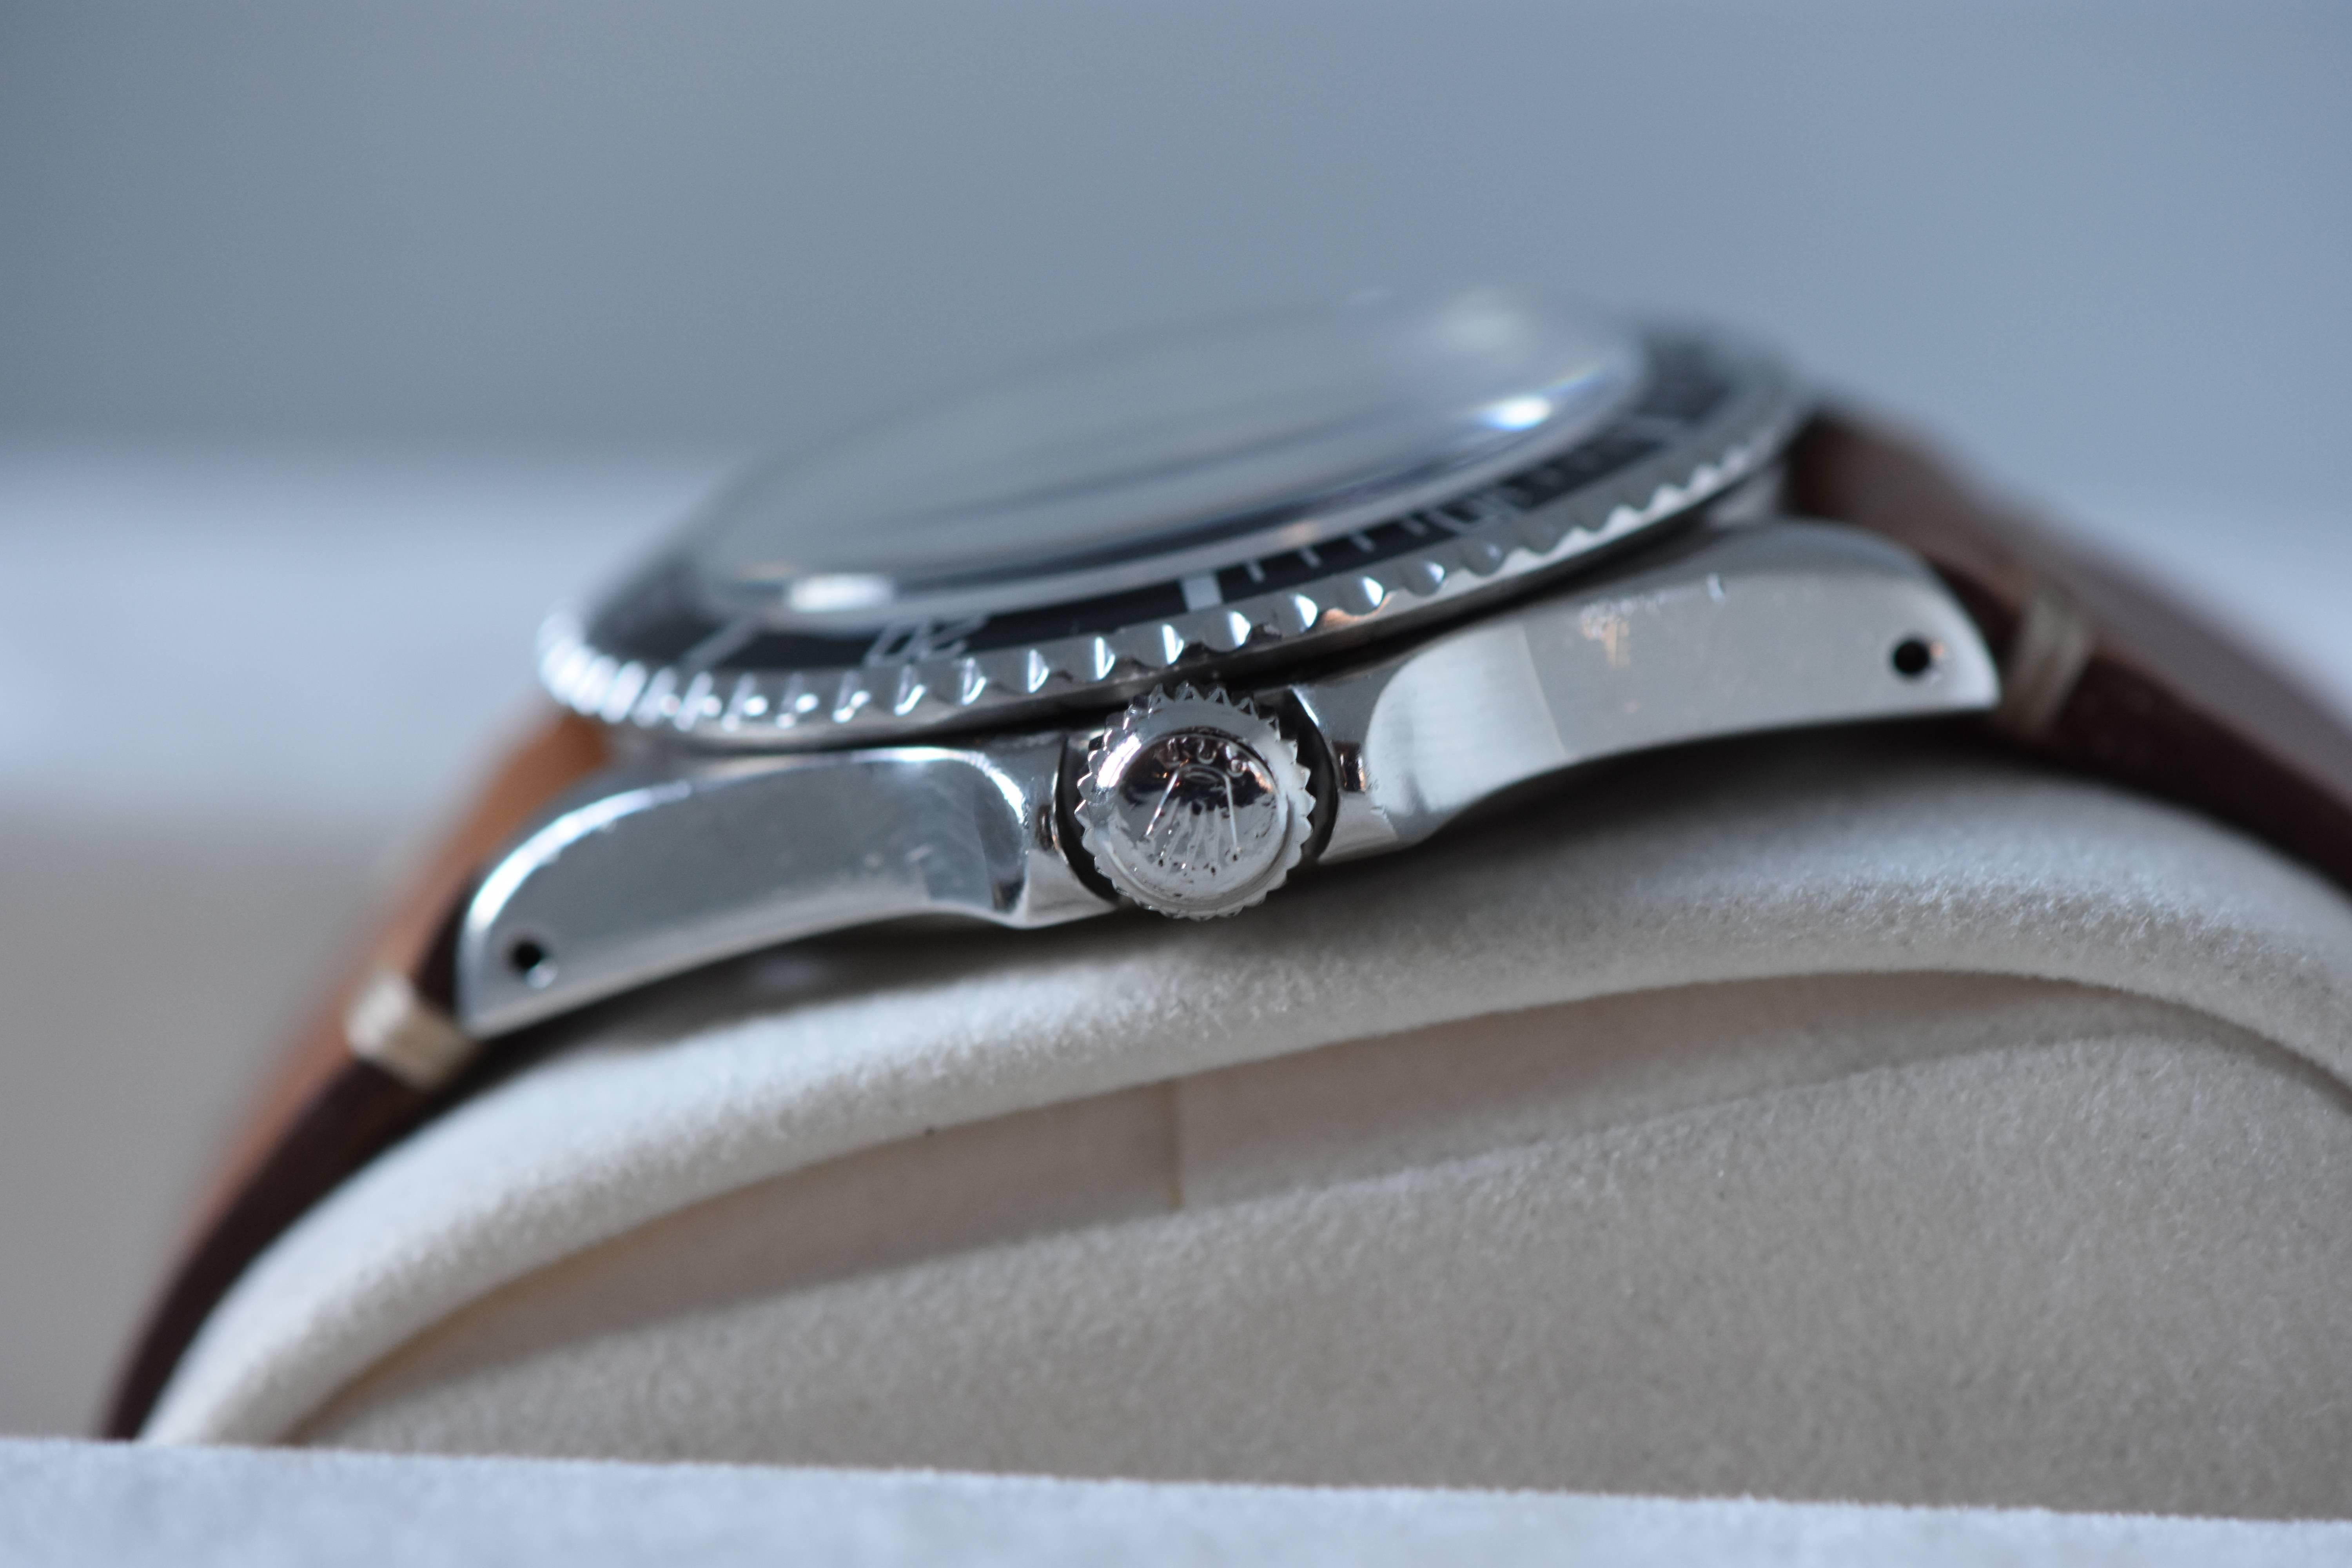  Rolex Stainless Steel Submariner  Wristwatch Ref 5513  1